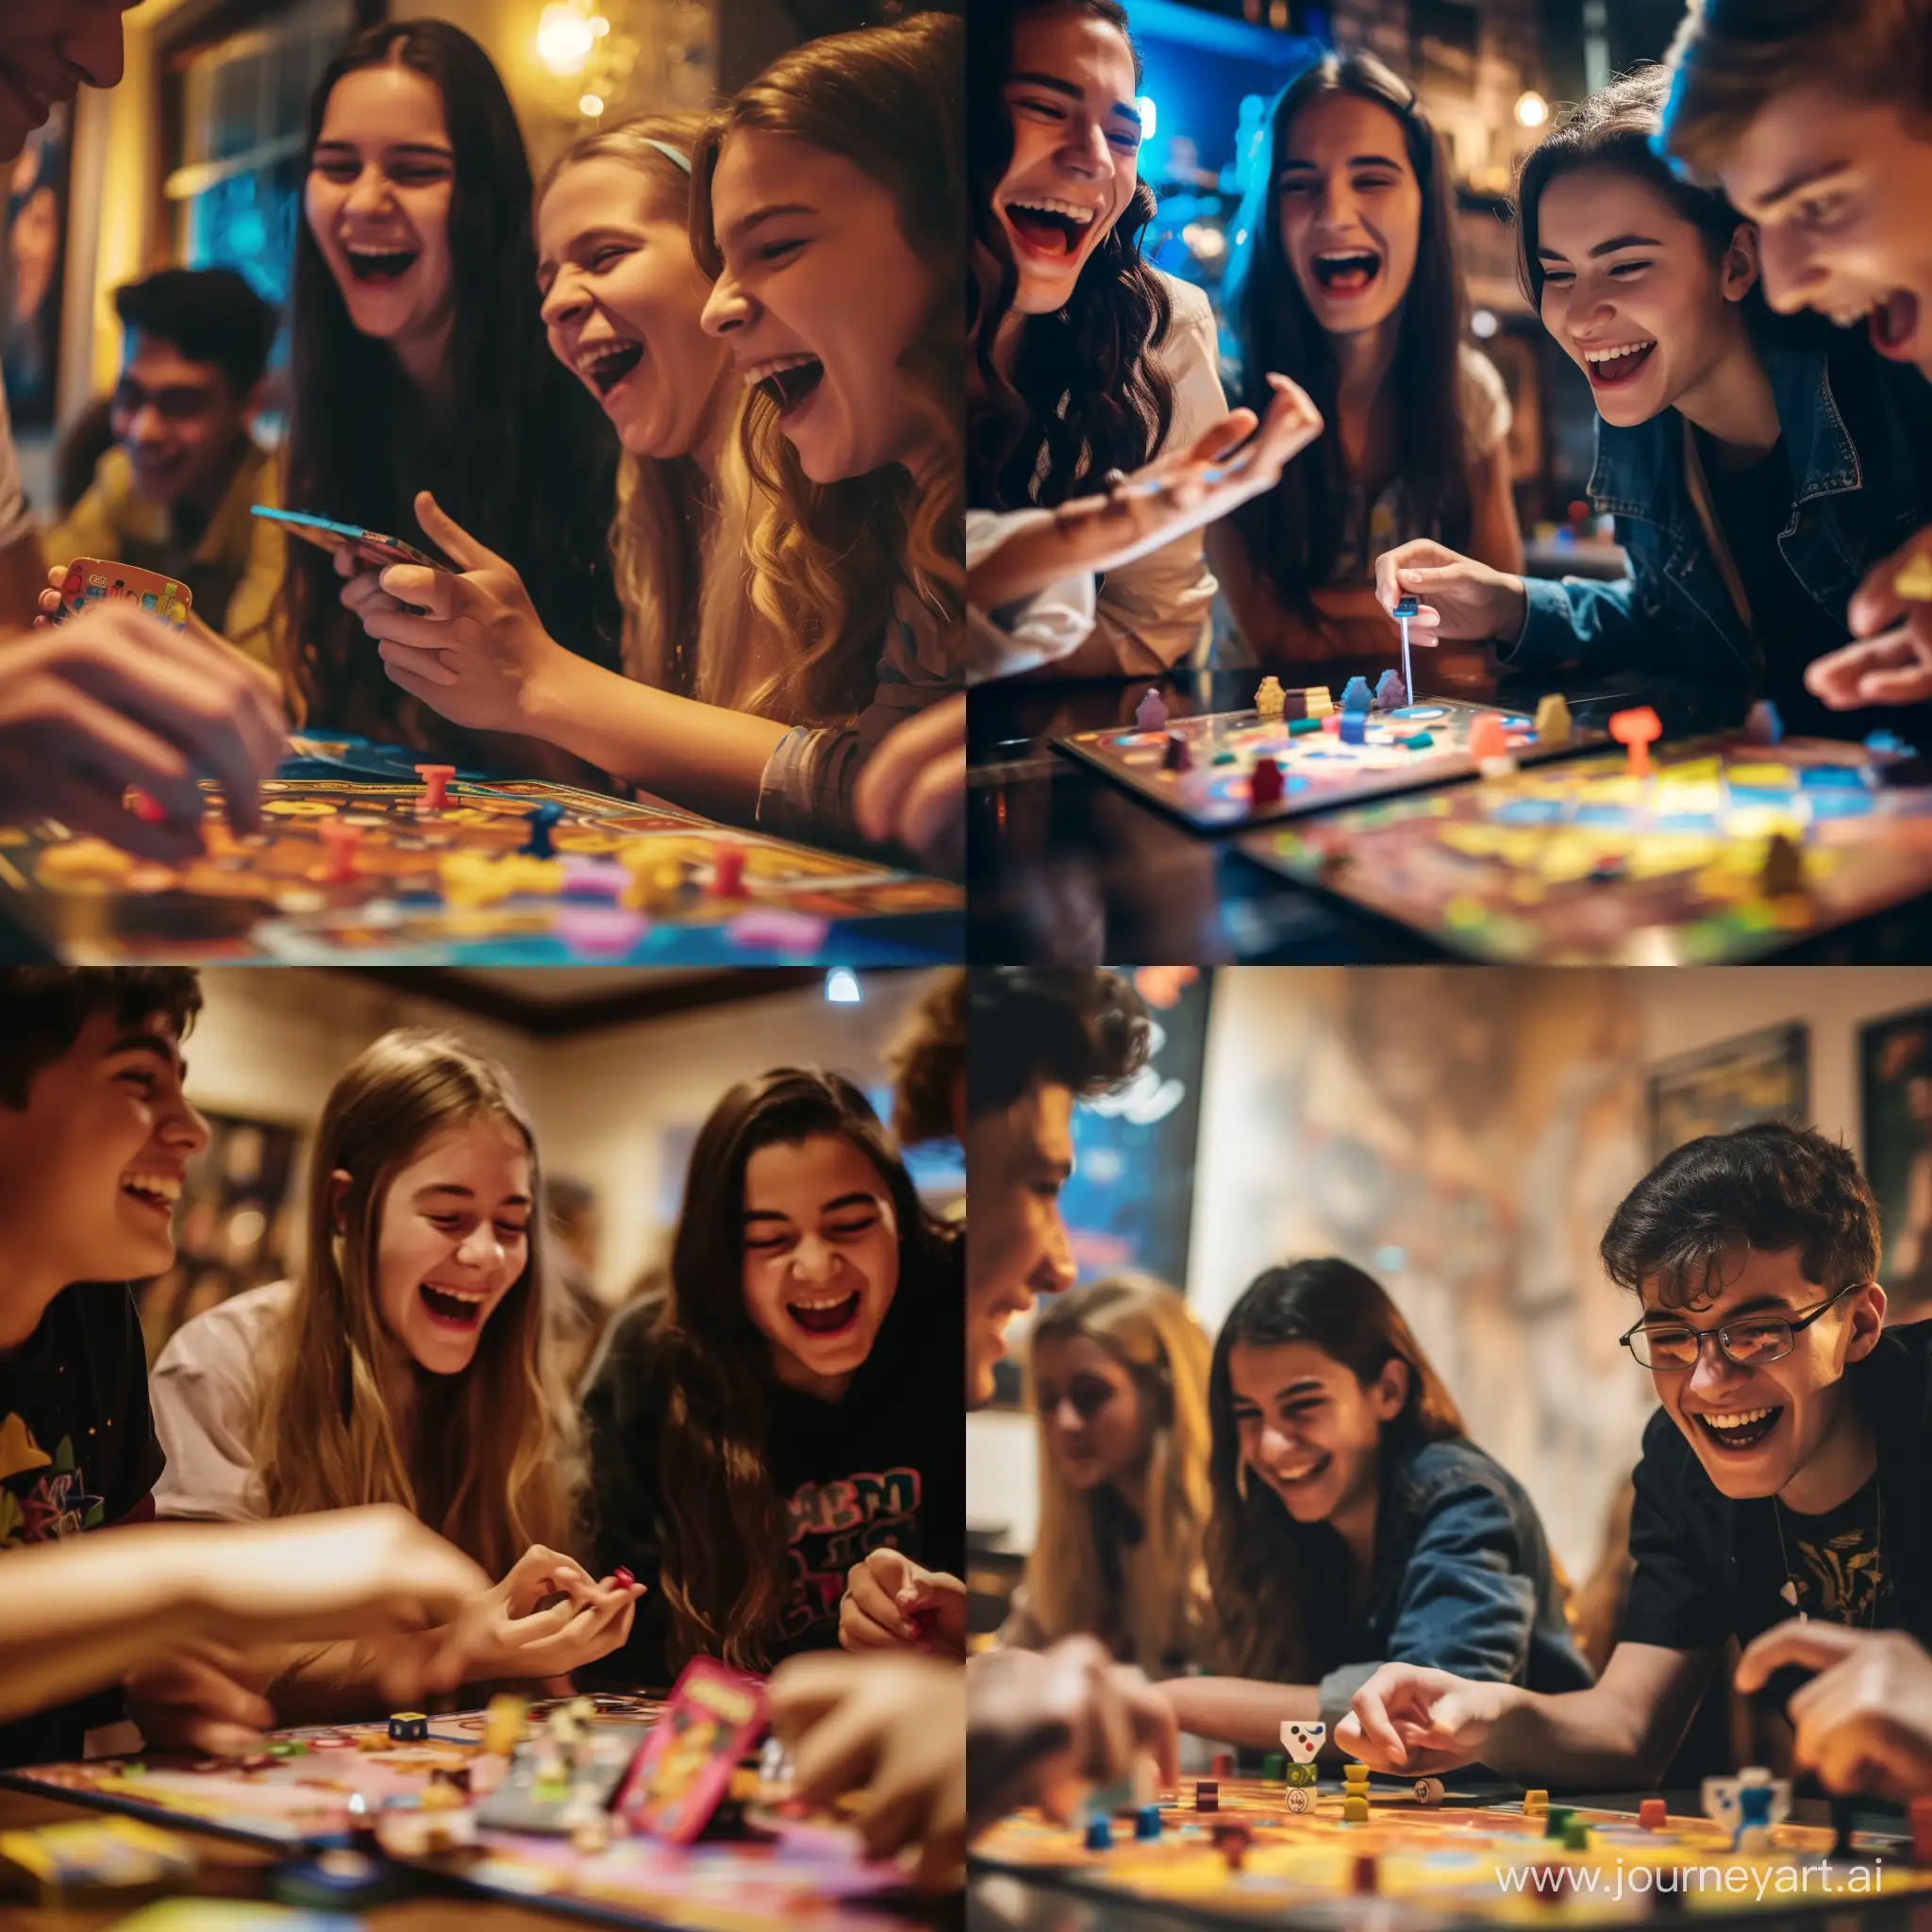 На этой вечеринке молодежь находит удовольствие в игре в настольные игры. Их лица светятся от смеха и волнения, их соревновательный дух создает энергичную и дружескую атмосферу, наполняя вечеринку весельем и незабываемыми моментами.